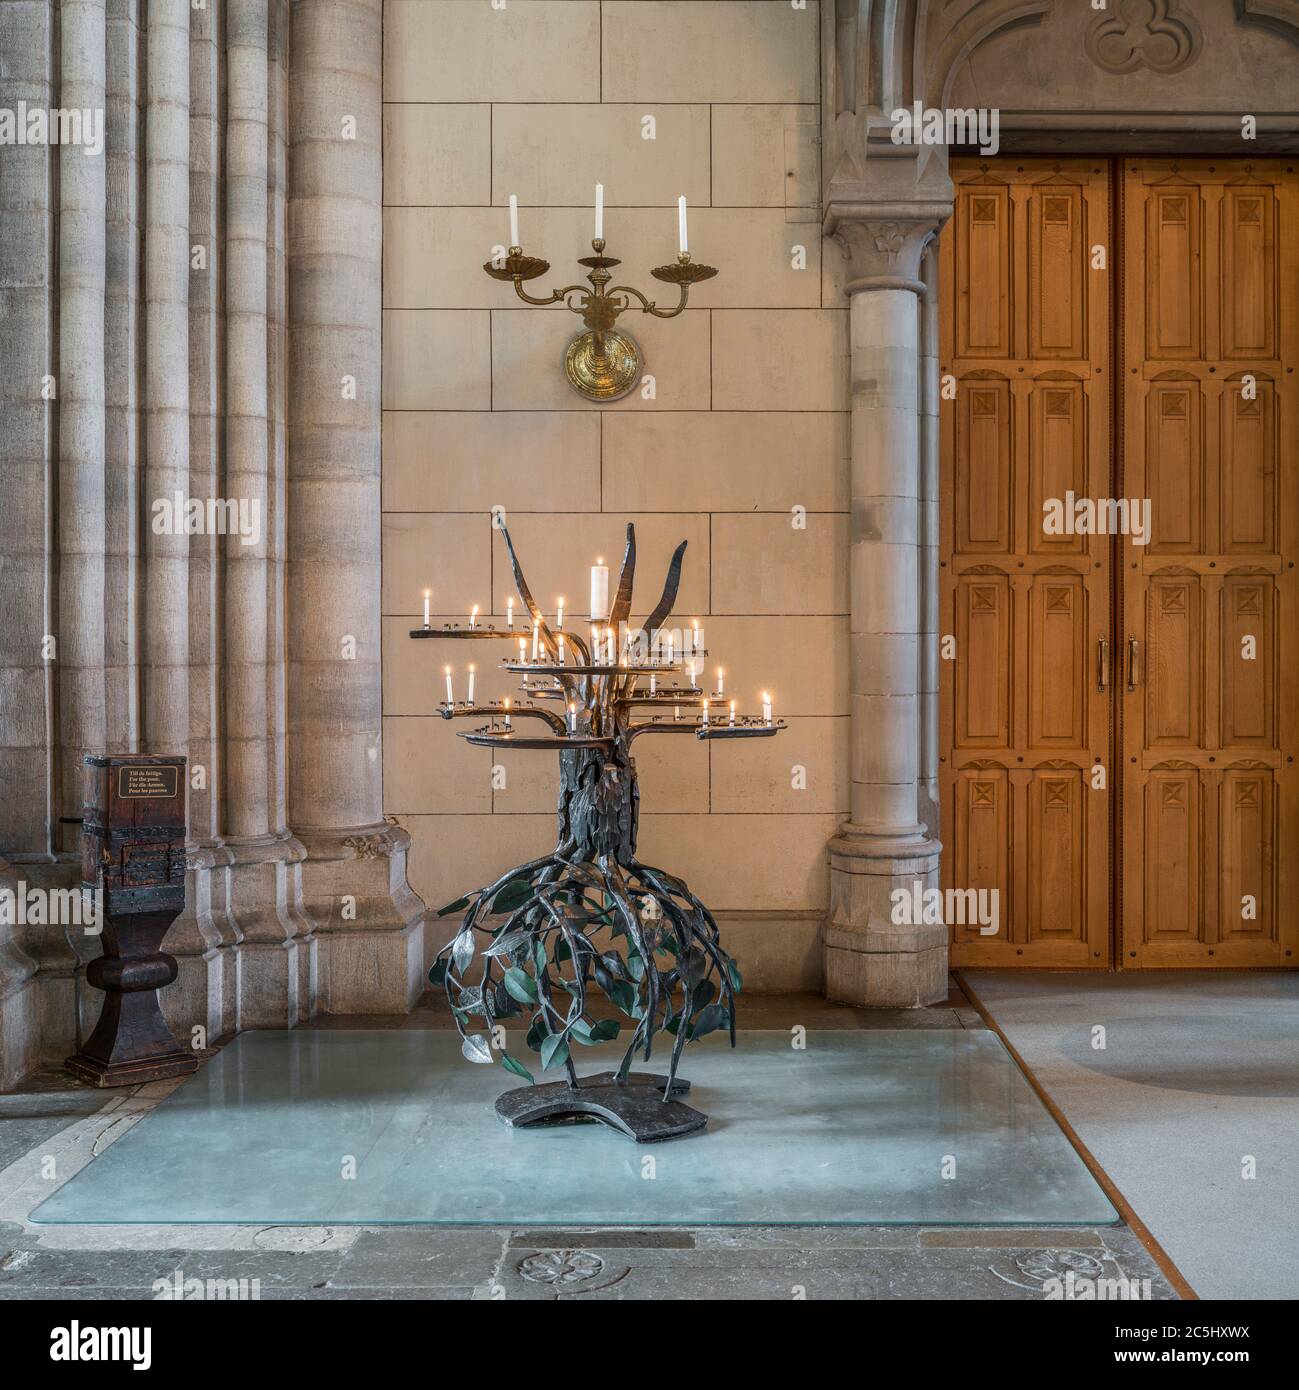 Bougies allumées. Intérieur de la cathédrale d'Uppsala (Domkyrka). Uppsala, Suède, Scandinavie. Banque D'Images